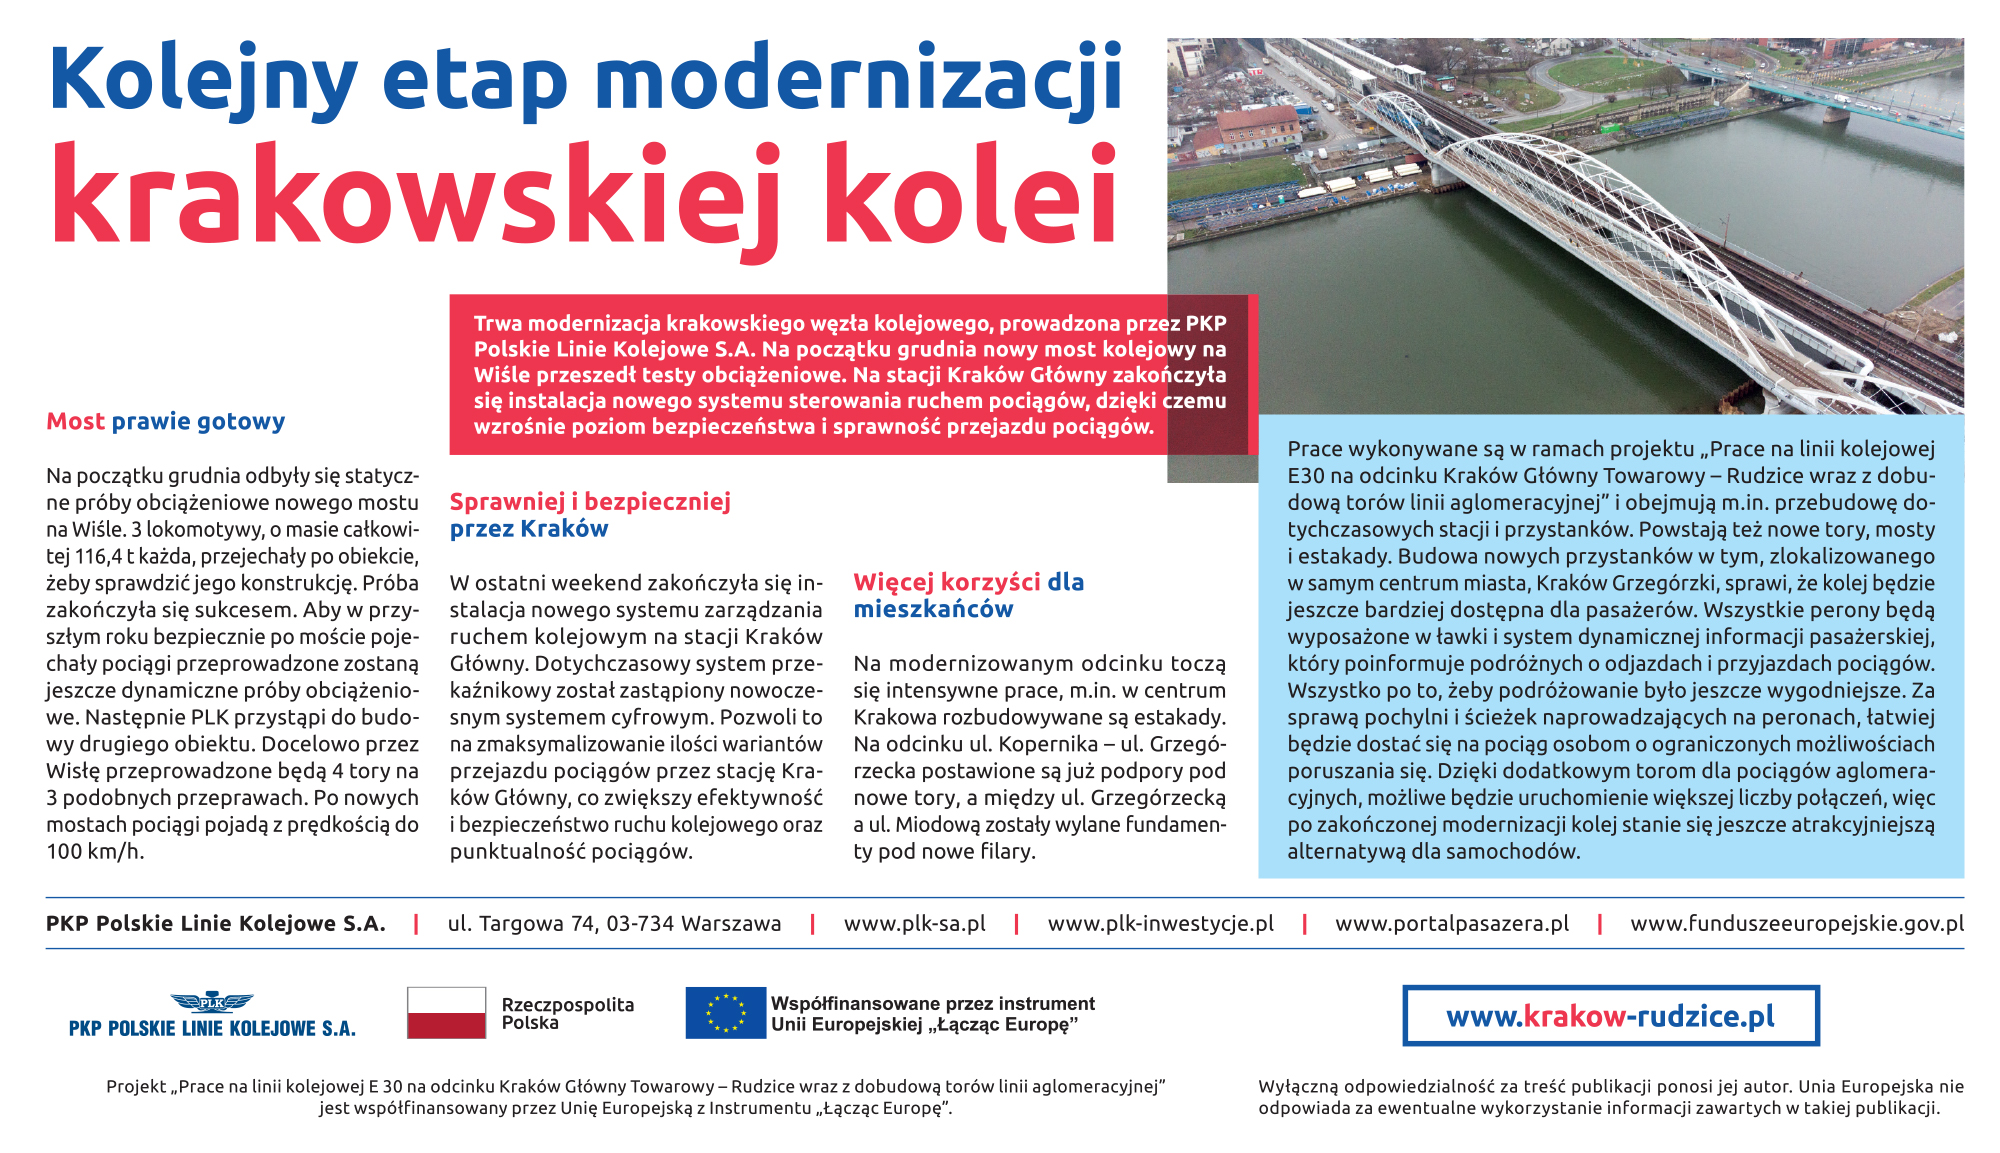 Artykuł opublikowany 17 grudnia 2019 r. w Gazecie Krakowskiej i Dzienniku Polskim. Zawiera zdjęcie mostu kolejowego na Wiśle wykonane z powietrza.